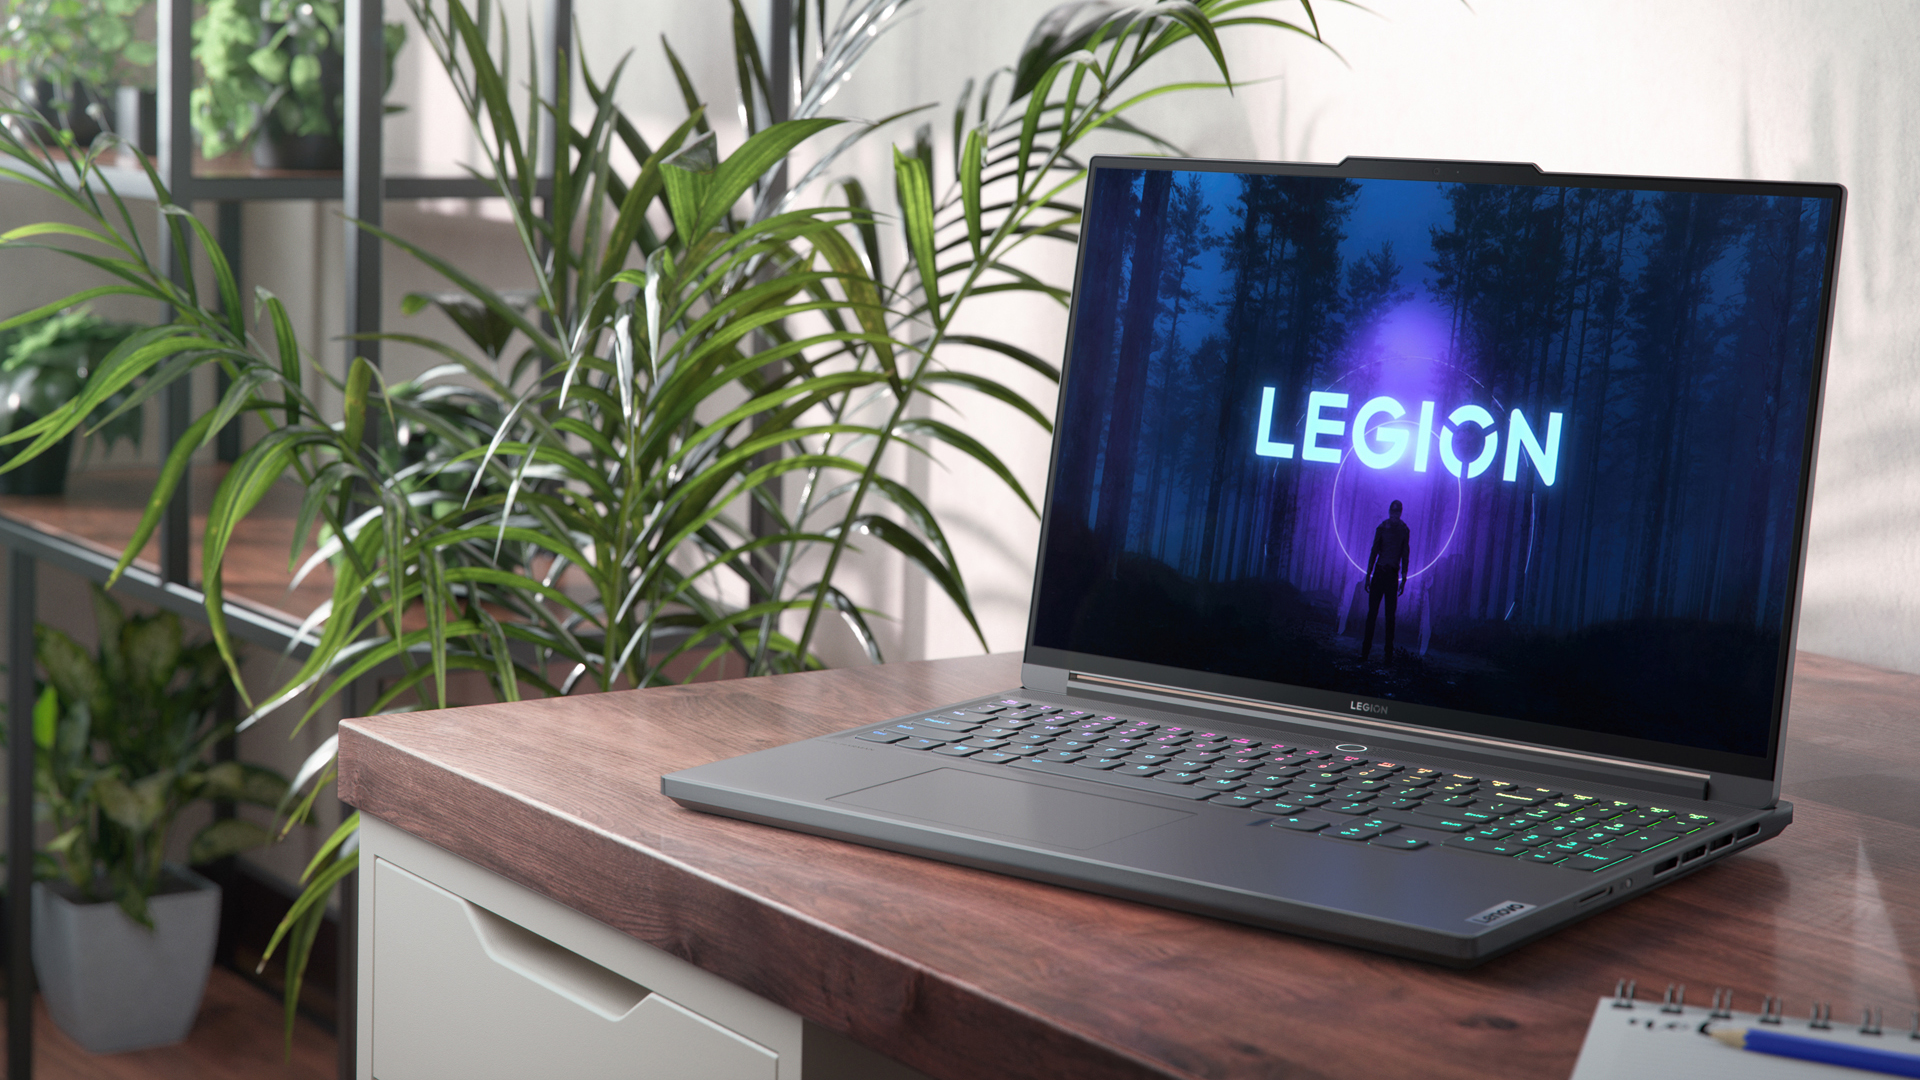 Lenovo Yoga Legion Hero Image